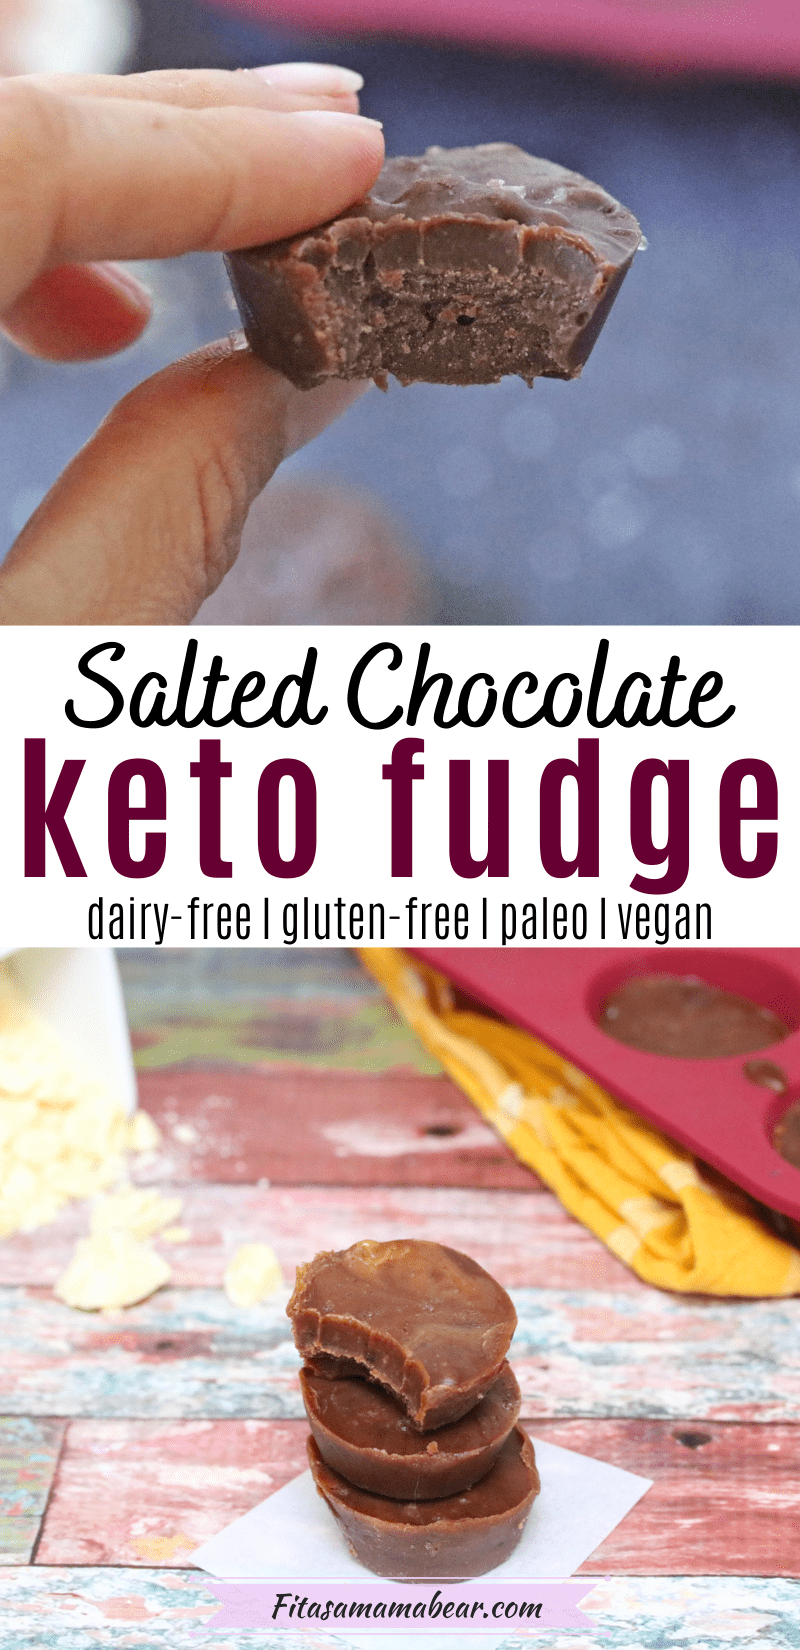 Keto Chocolate Fudge Recipe (dairy-free, gluten-free, paleo, vegan)